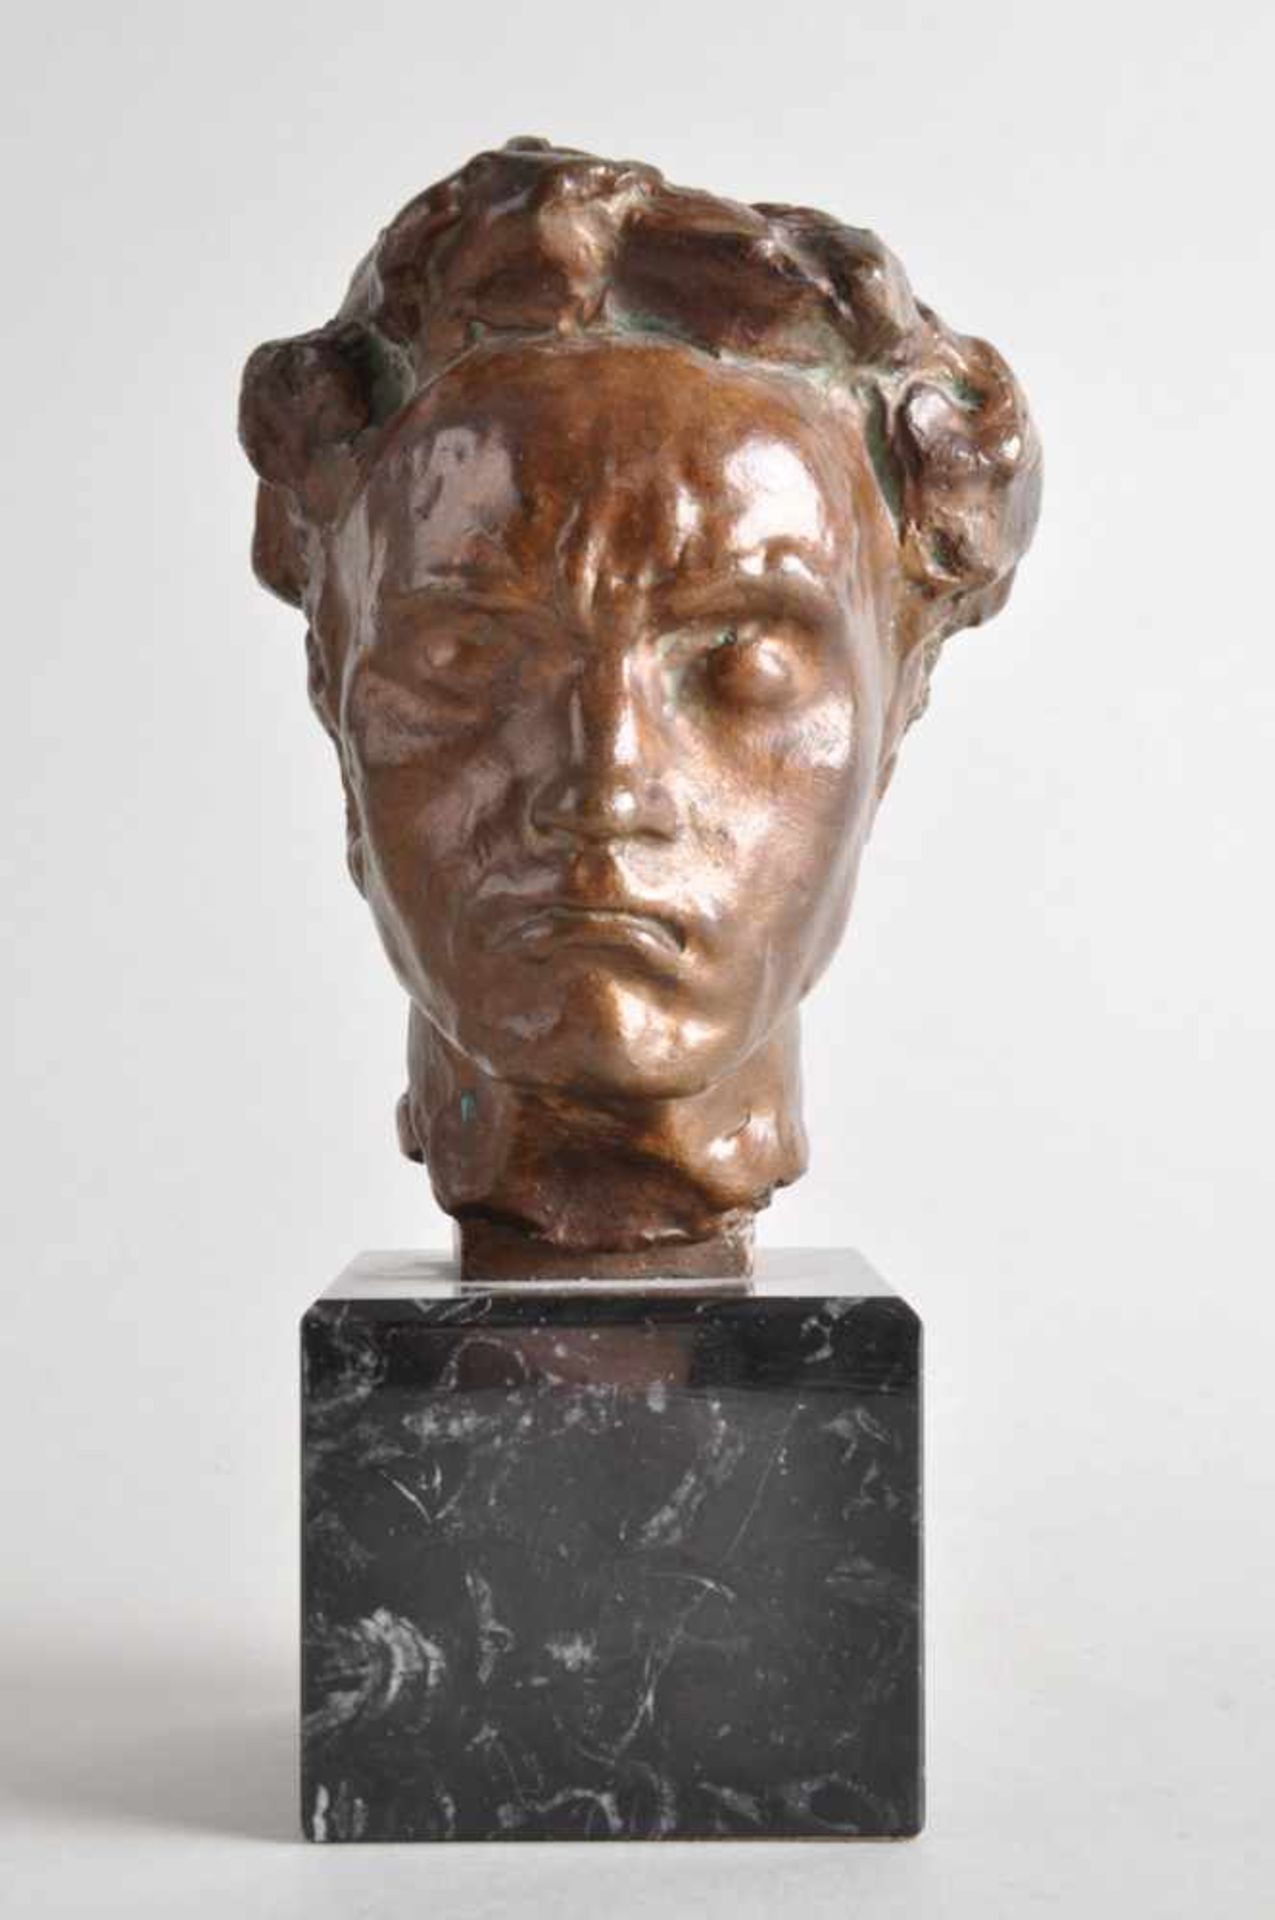 Ludwig van Beethoven. Bronzebüste.Arno Breker (19.07.1900 Elberfeld - 13.02.1991 Düsseldorf). Bronze